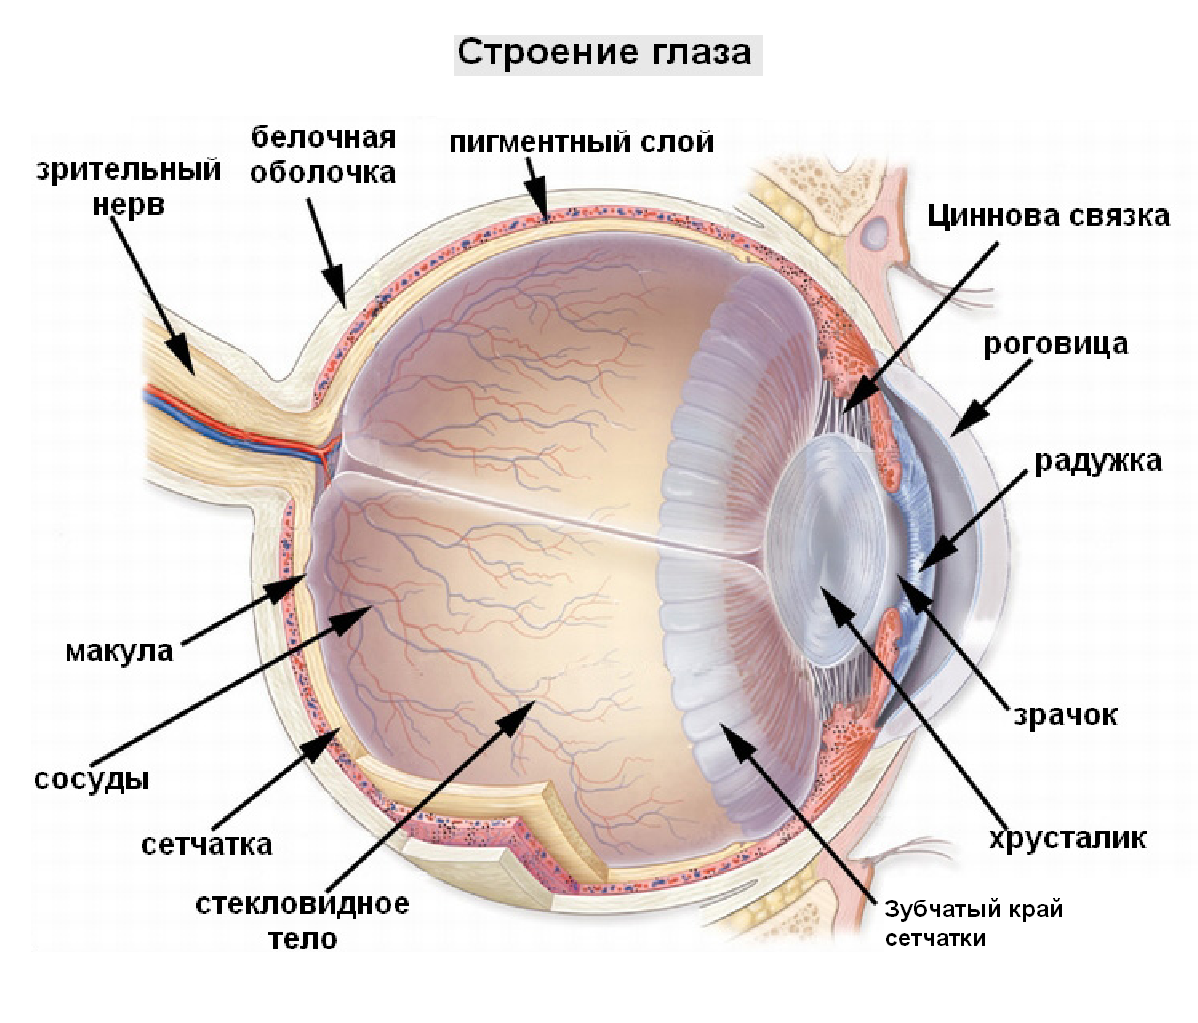 Глаза разных цветов и разного размера: почему, как называется, что значит | компетентно о здоровье на ilive